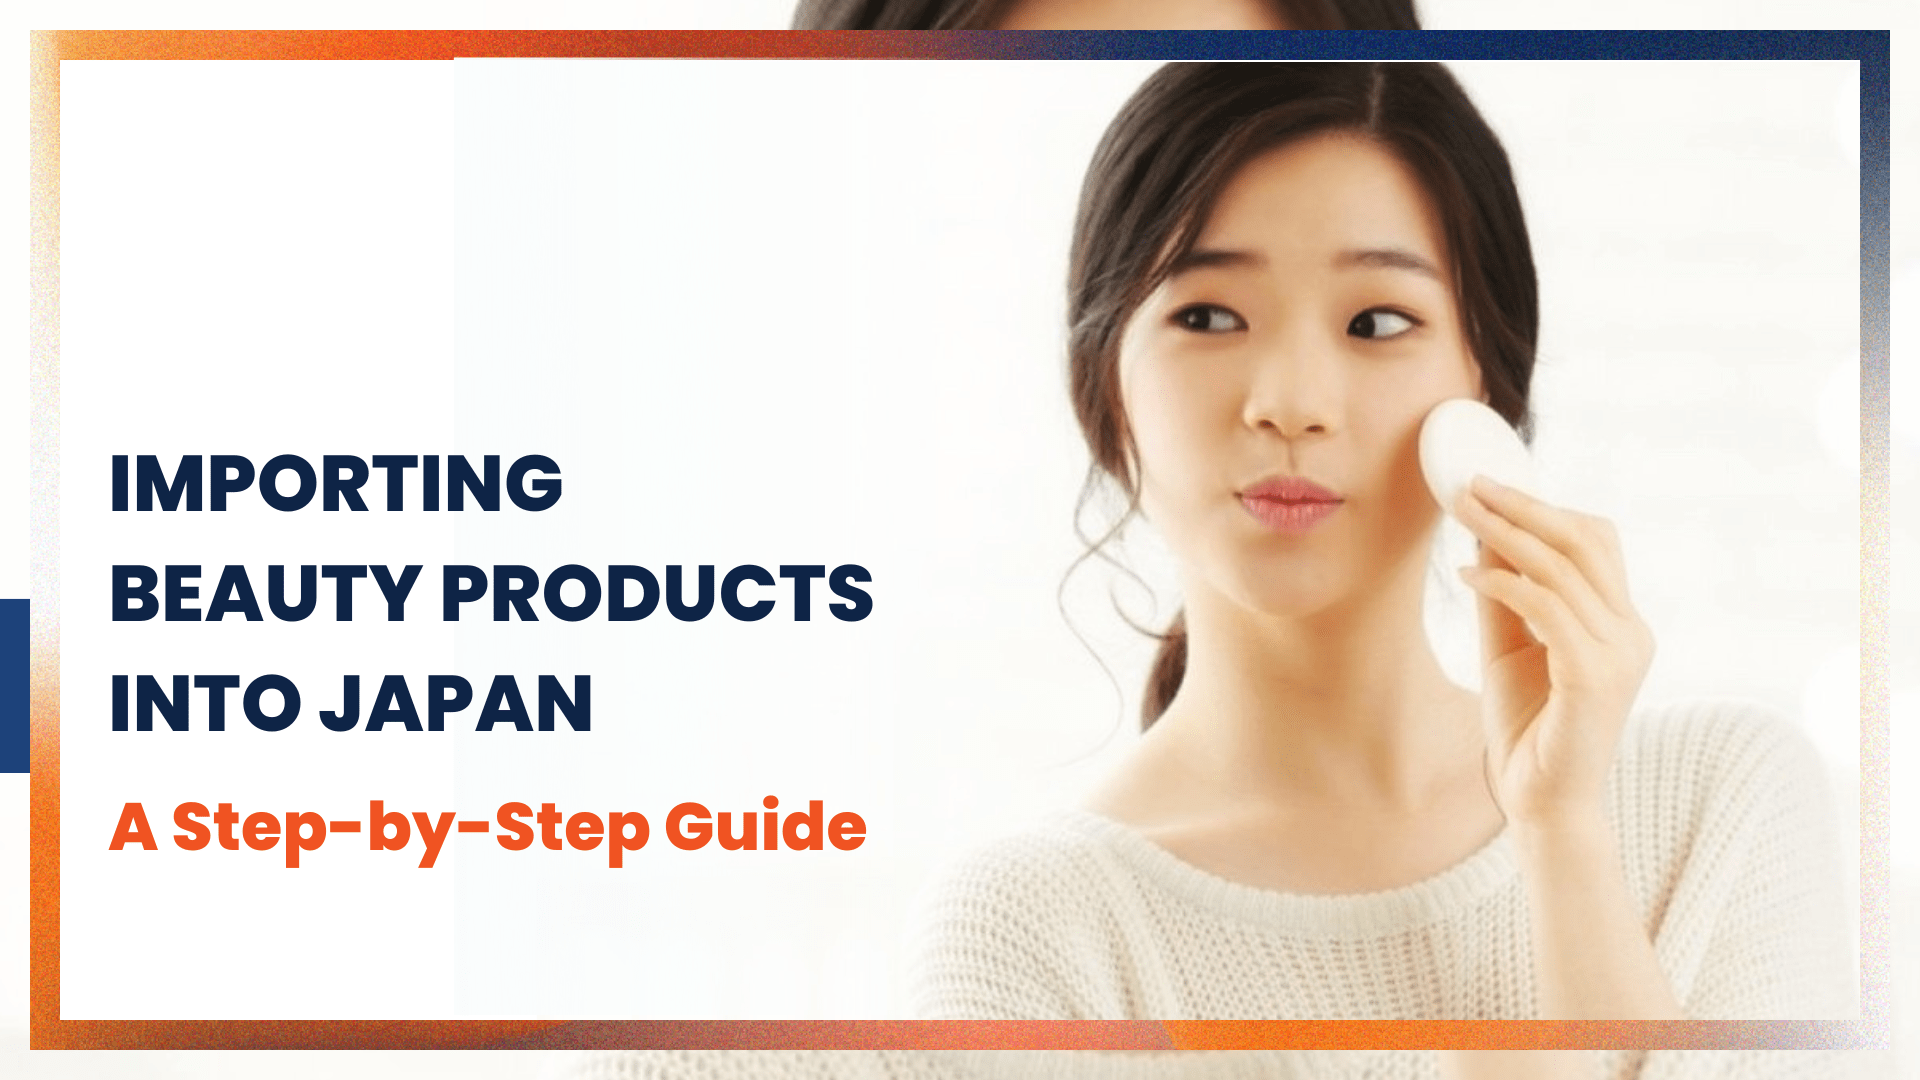 जापान में सौंदर्य उत्पादों को कैसे आयात करें: एक चरण-दर-चरण मार्गदर्शिका 